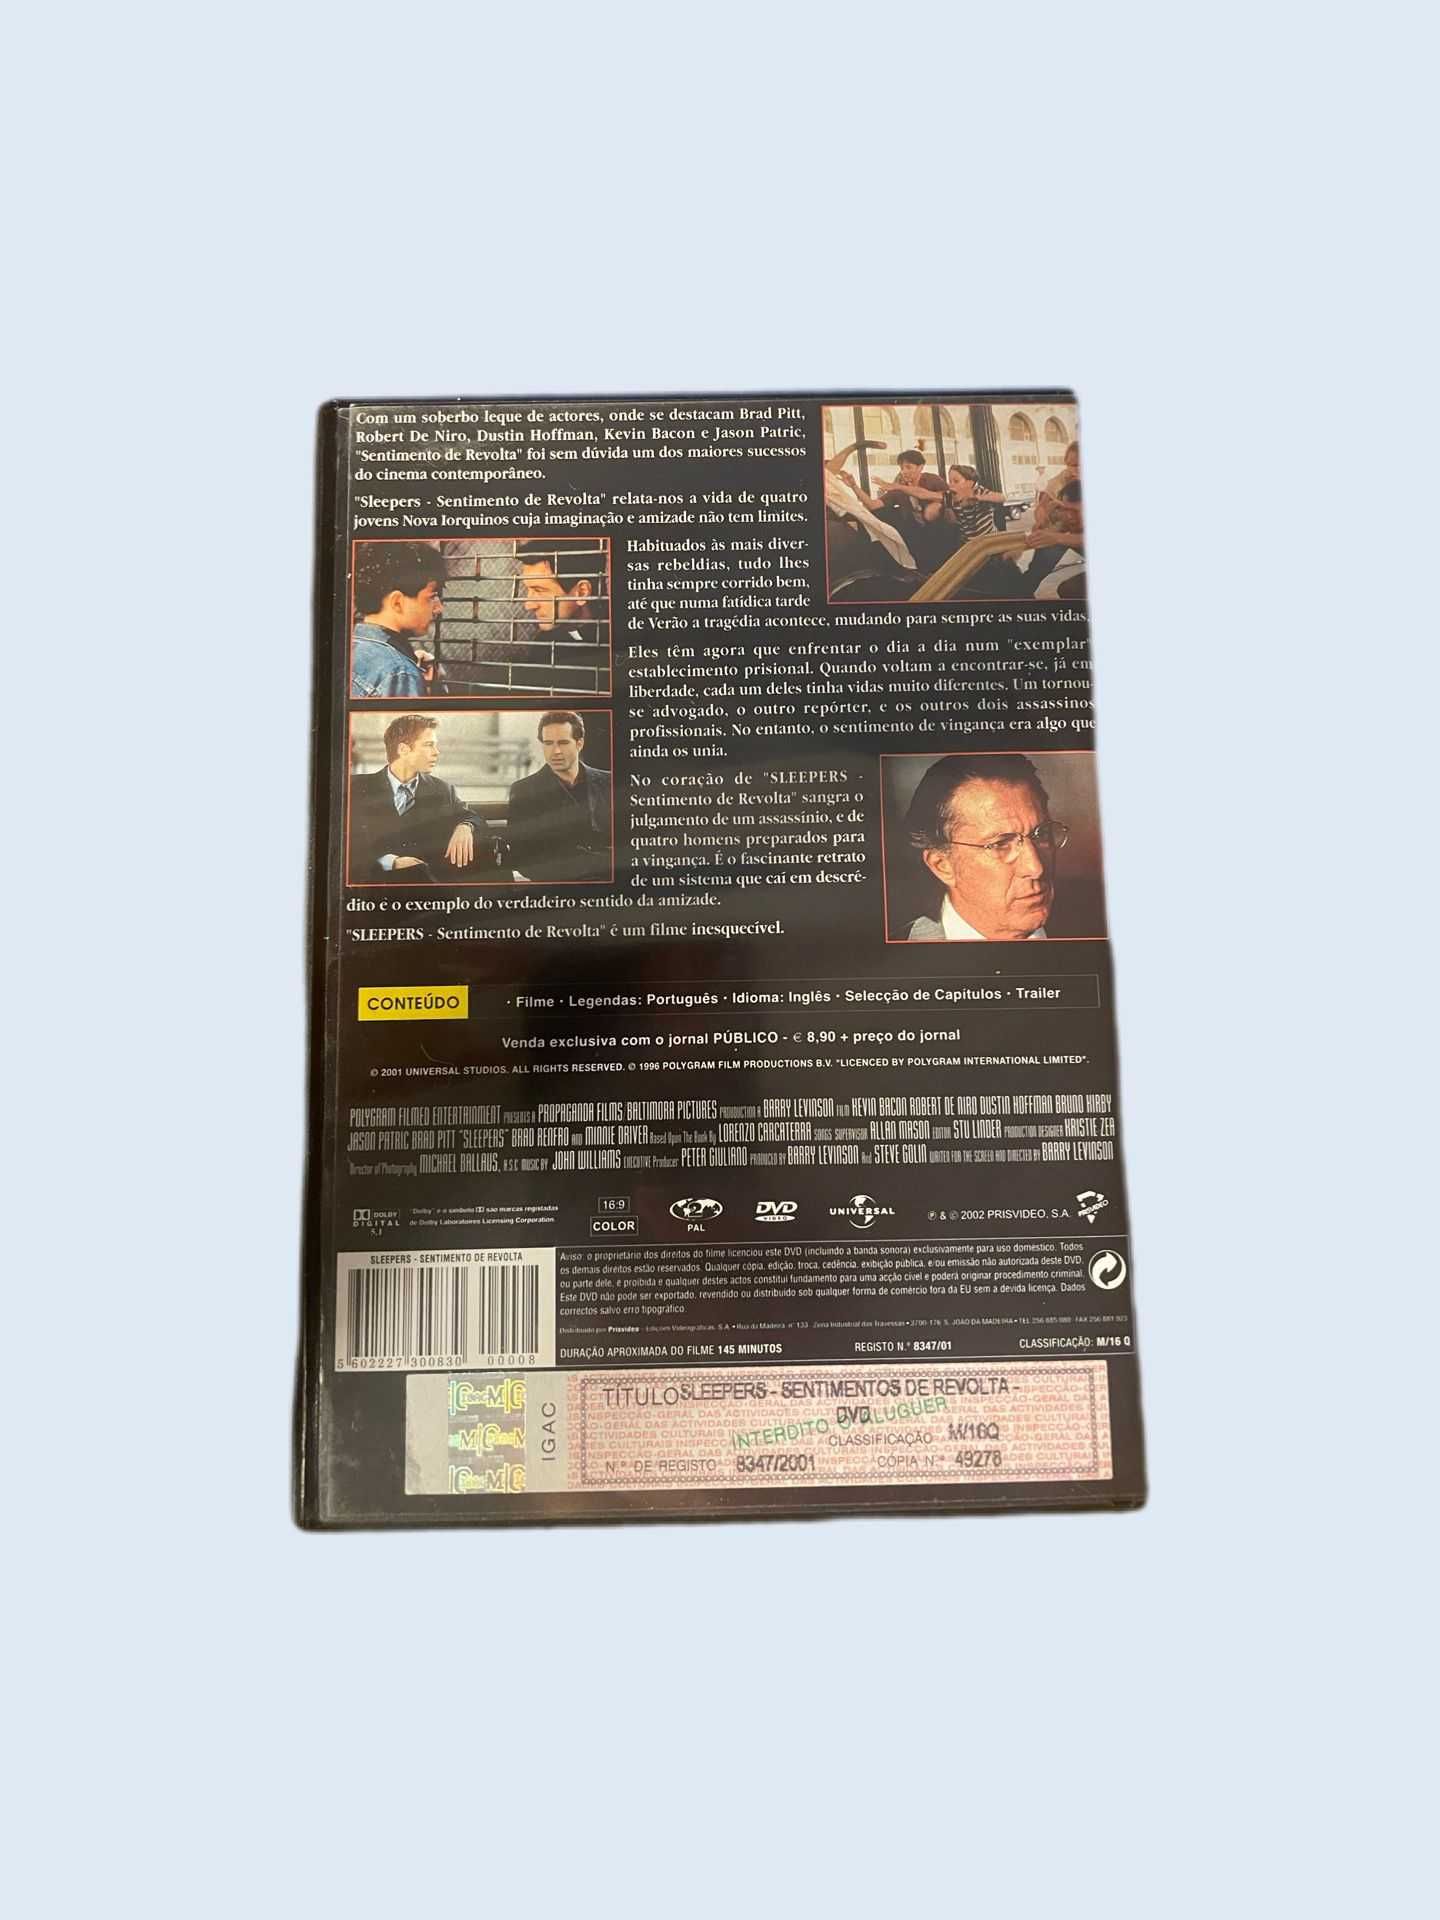 DVD Sleepers (Sentimento de Revolta) - original (1996)